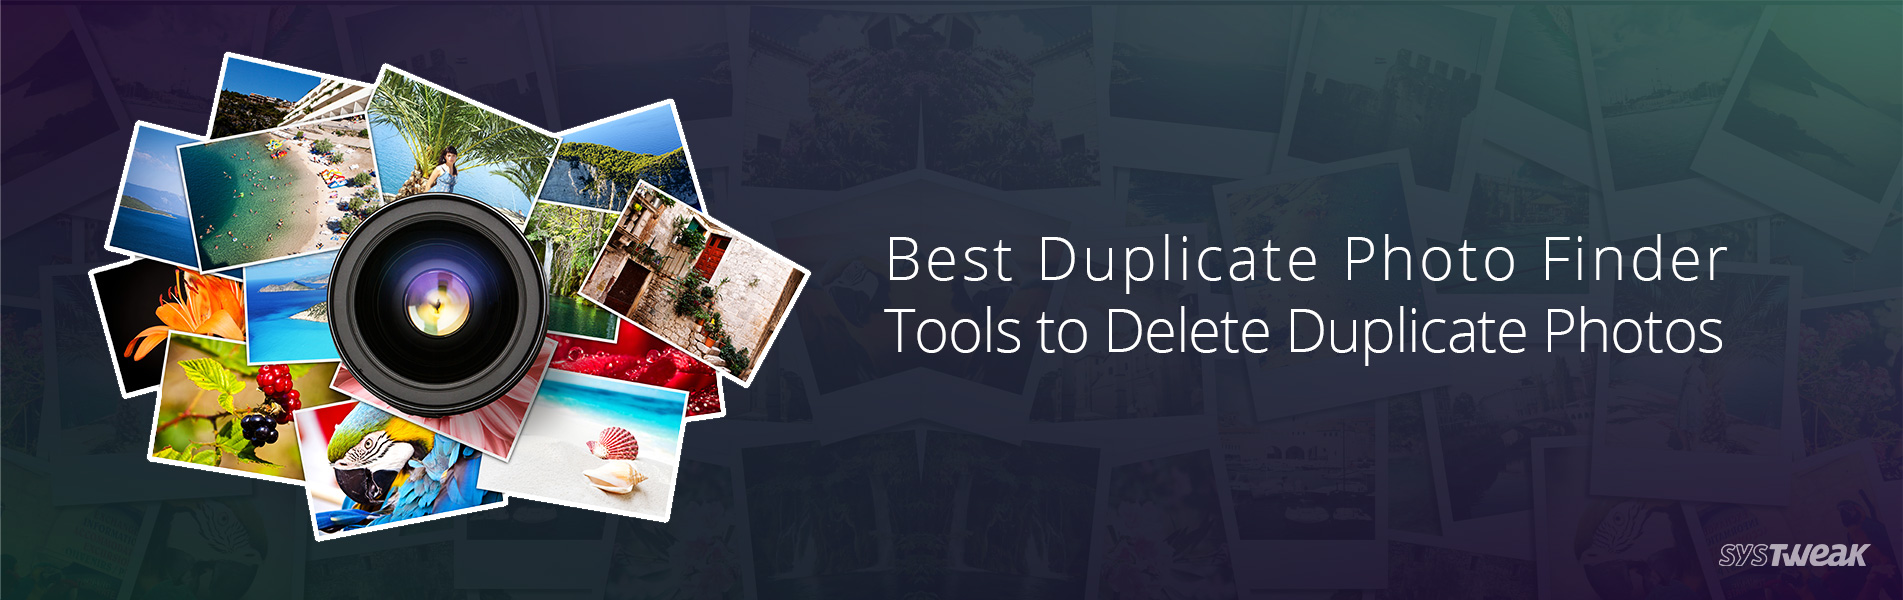 best duplicate photo finder mac 2016